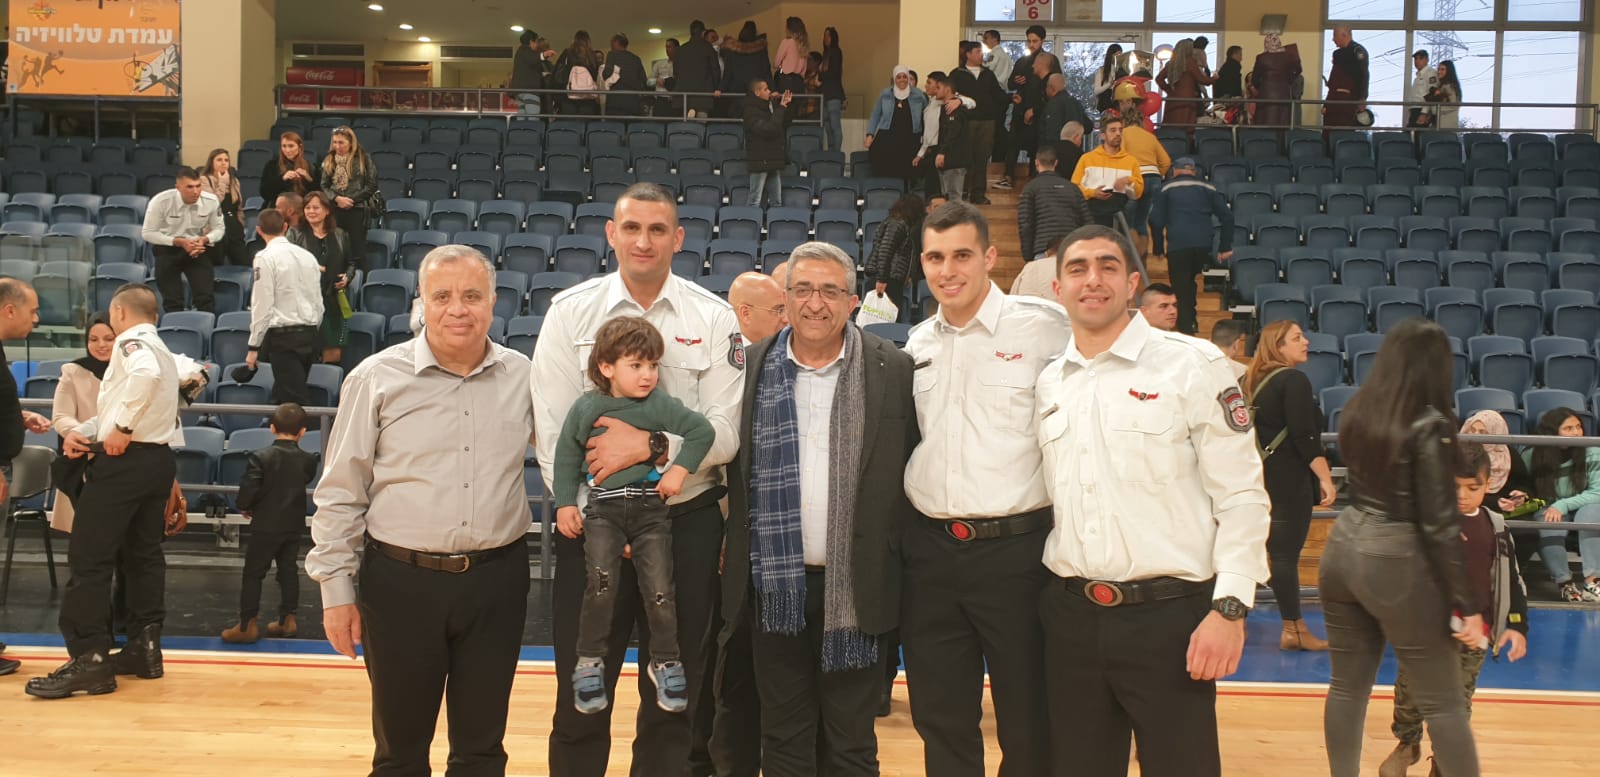 الاحتفال بتخريج 48 رجل اطفاء وانقاذ من المجتمع العربي بمشاركة الرئيس عادل بدير 